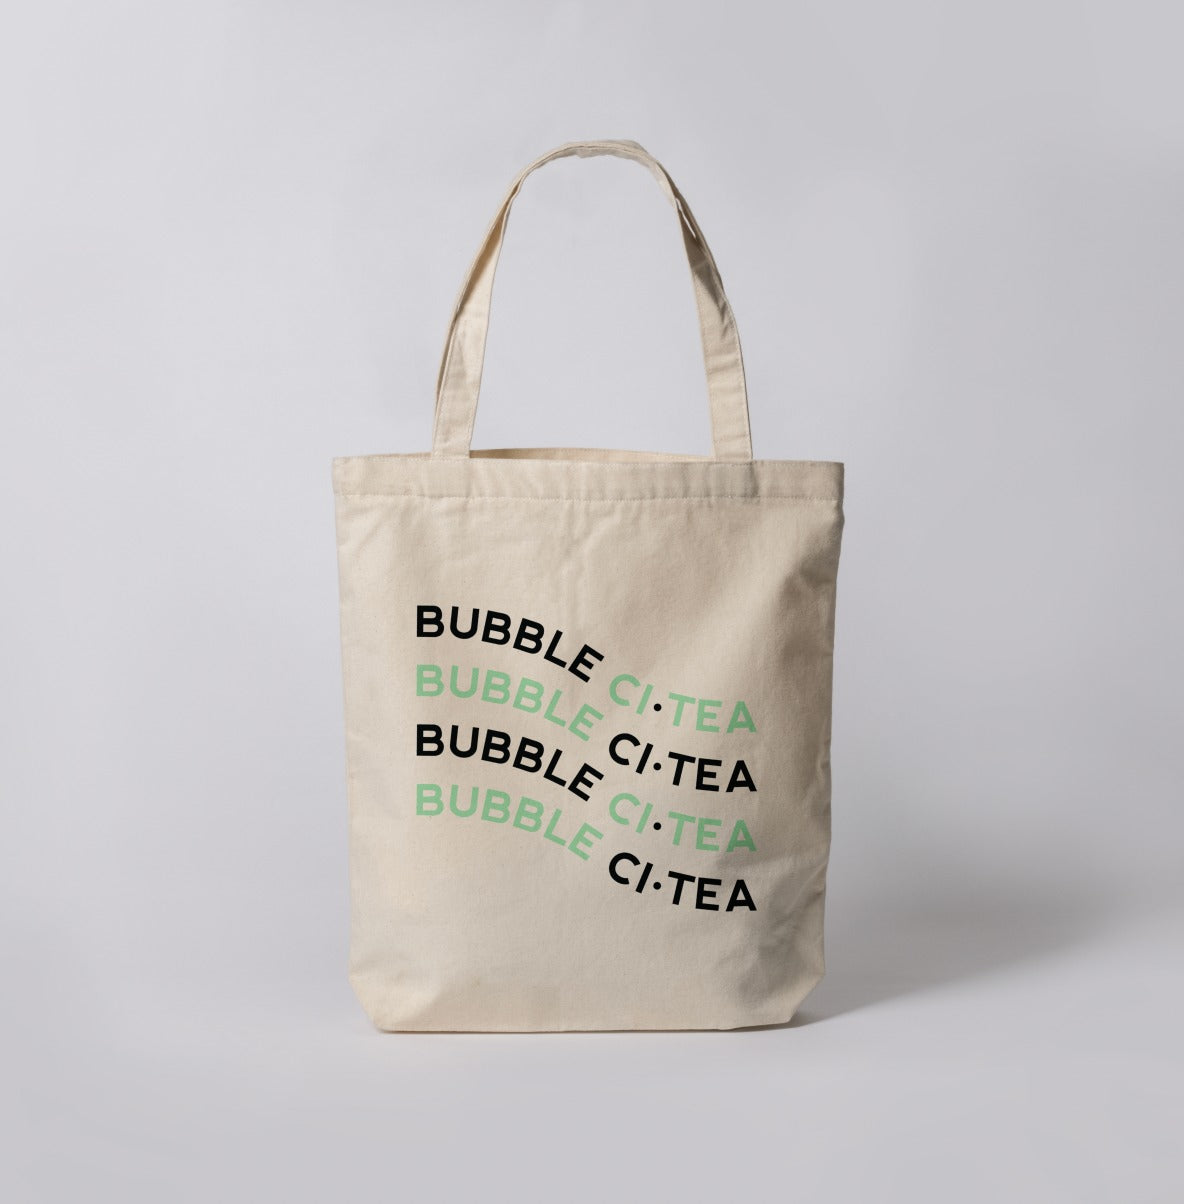 SIP SIP HOORAY TOTE BAG — Boba Love - Bubble tea apparel & accessories